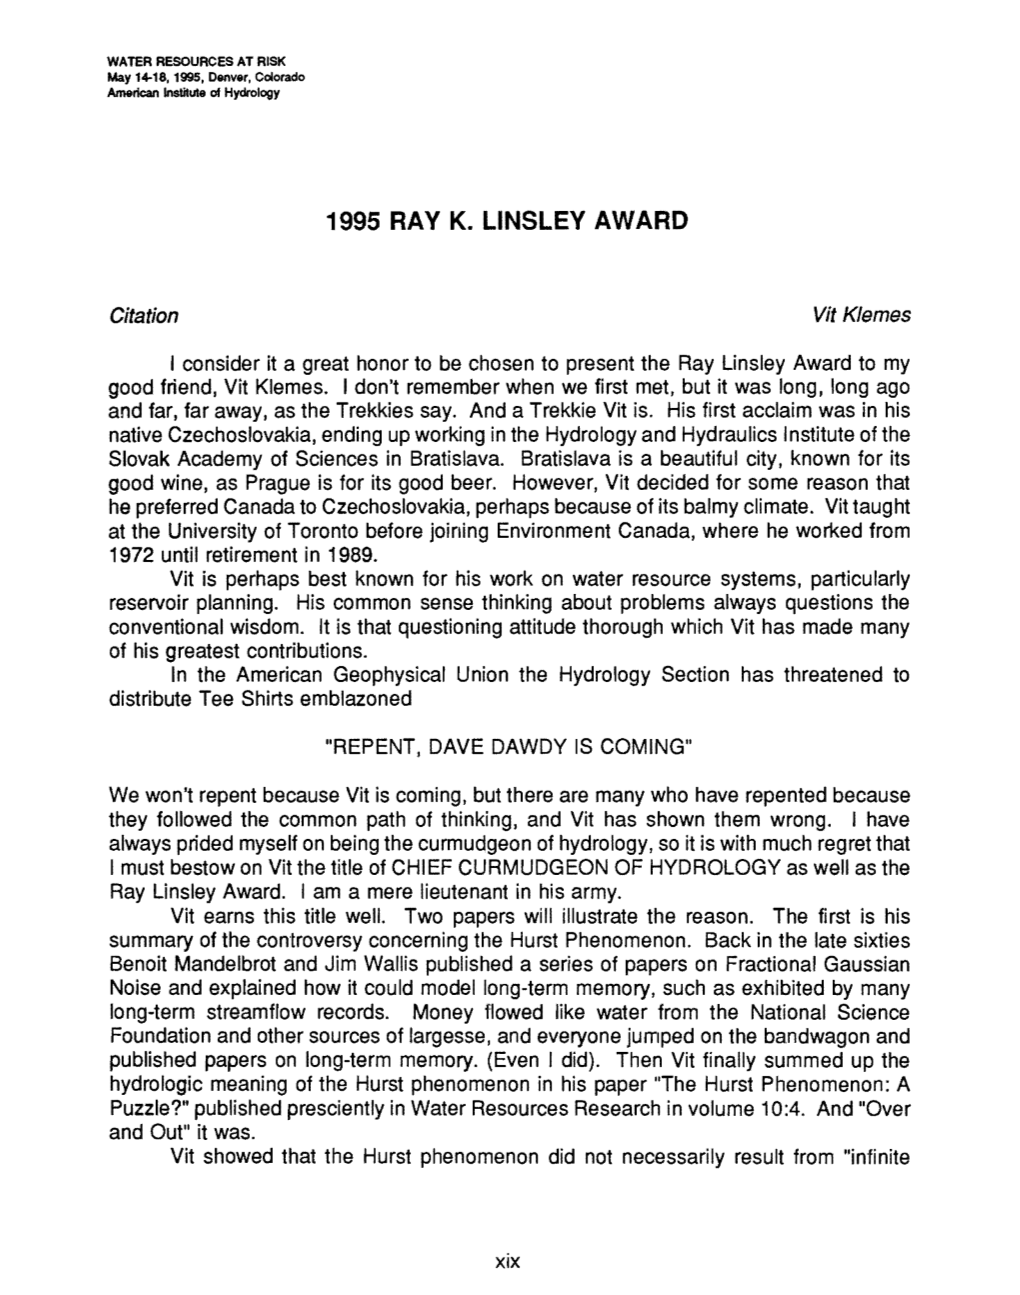 1995 Ray K. Linsley Award